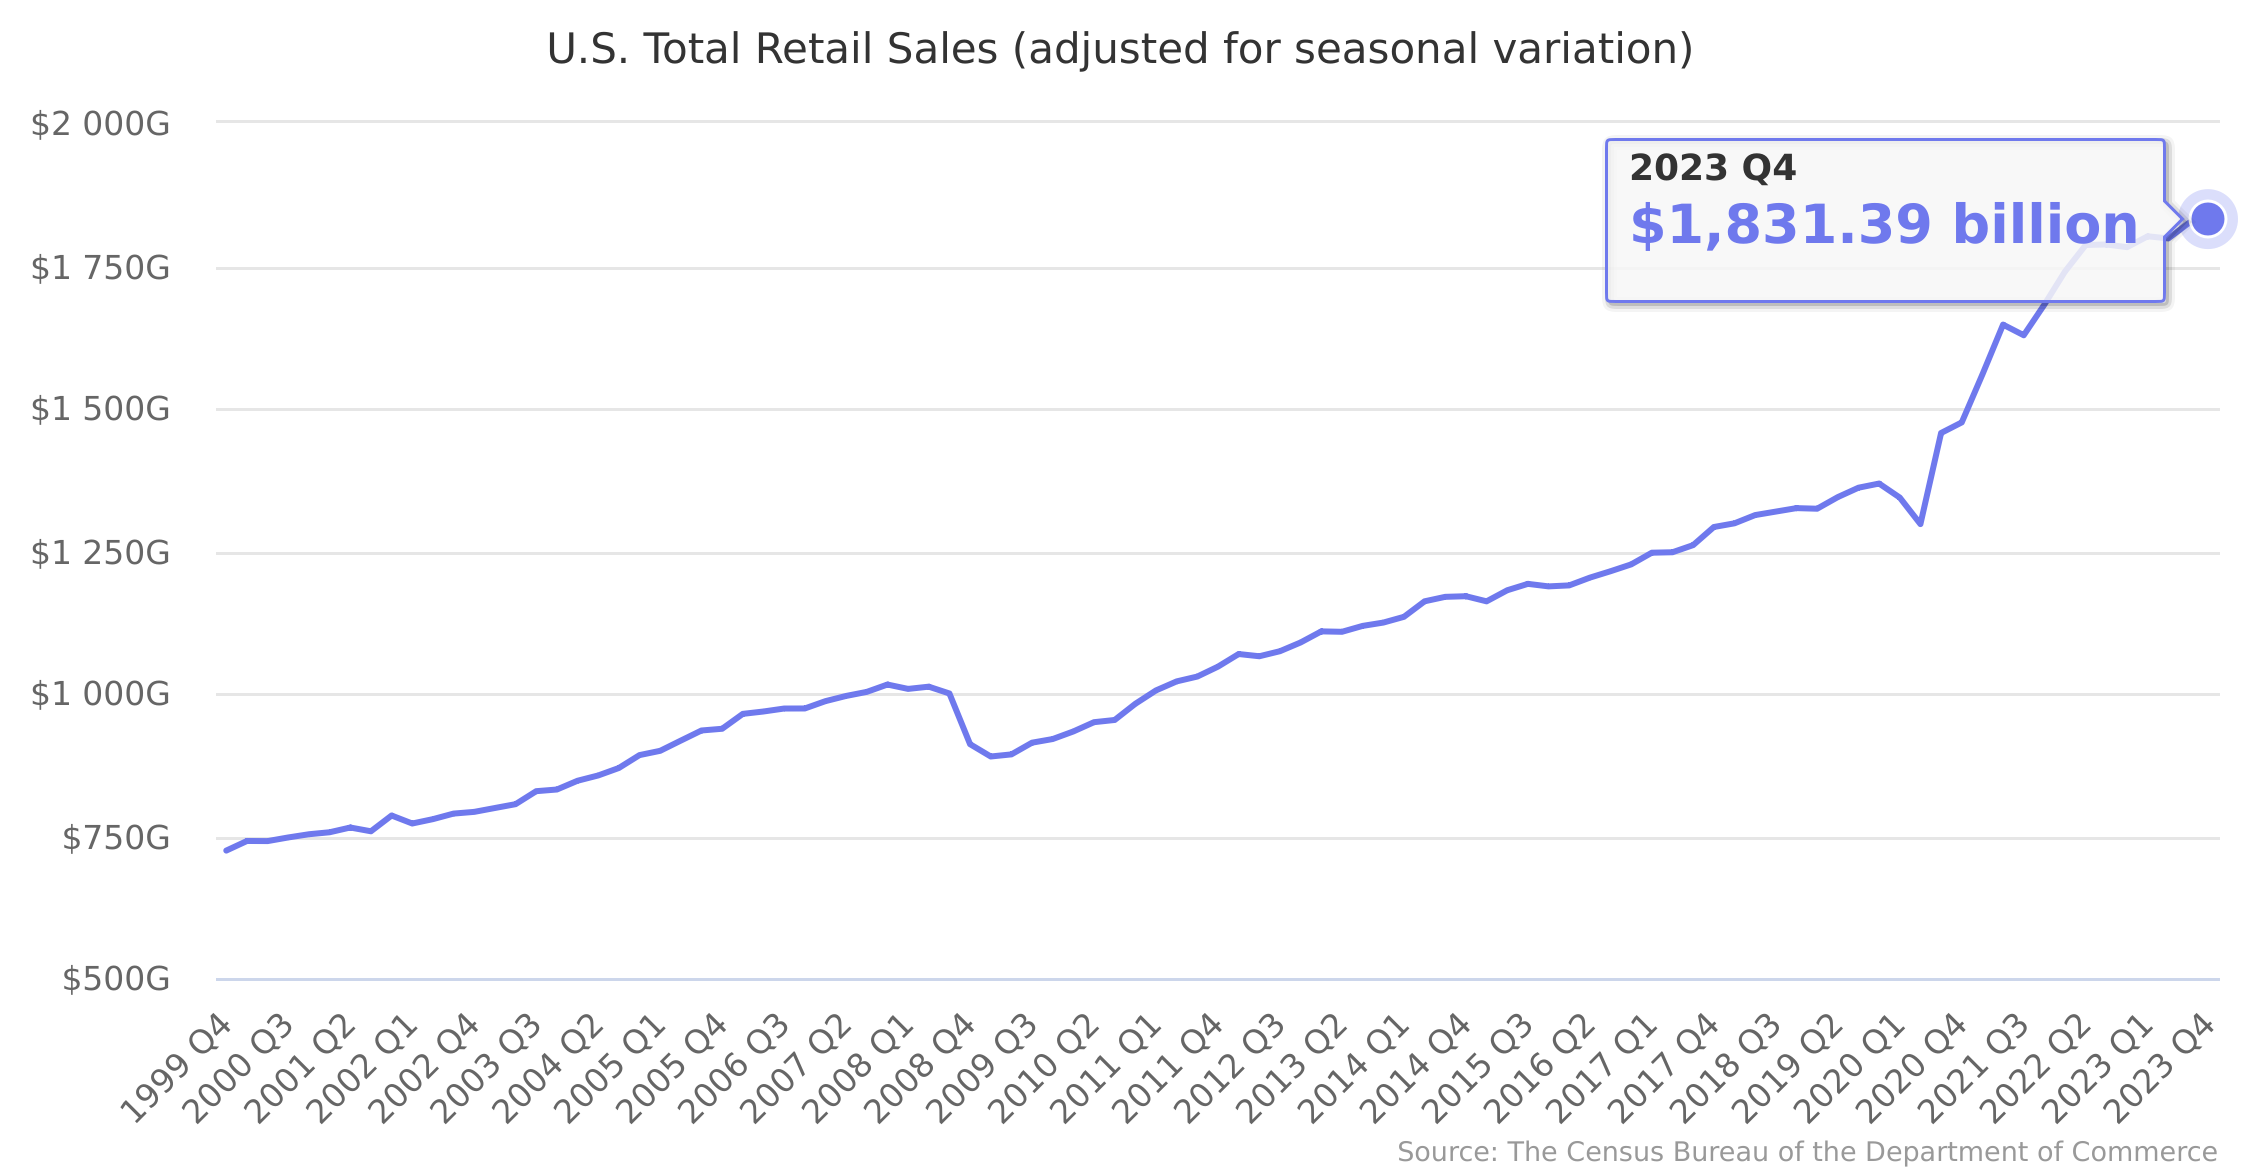 U.S. Total Retail Sales 1999-2022